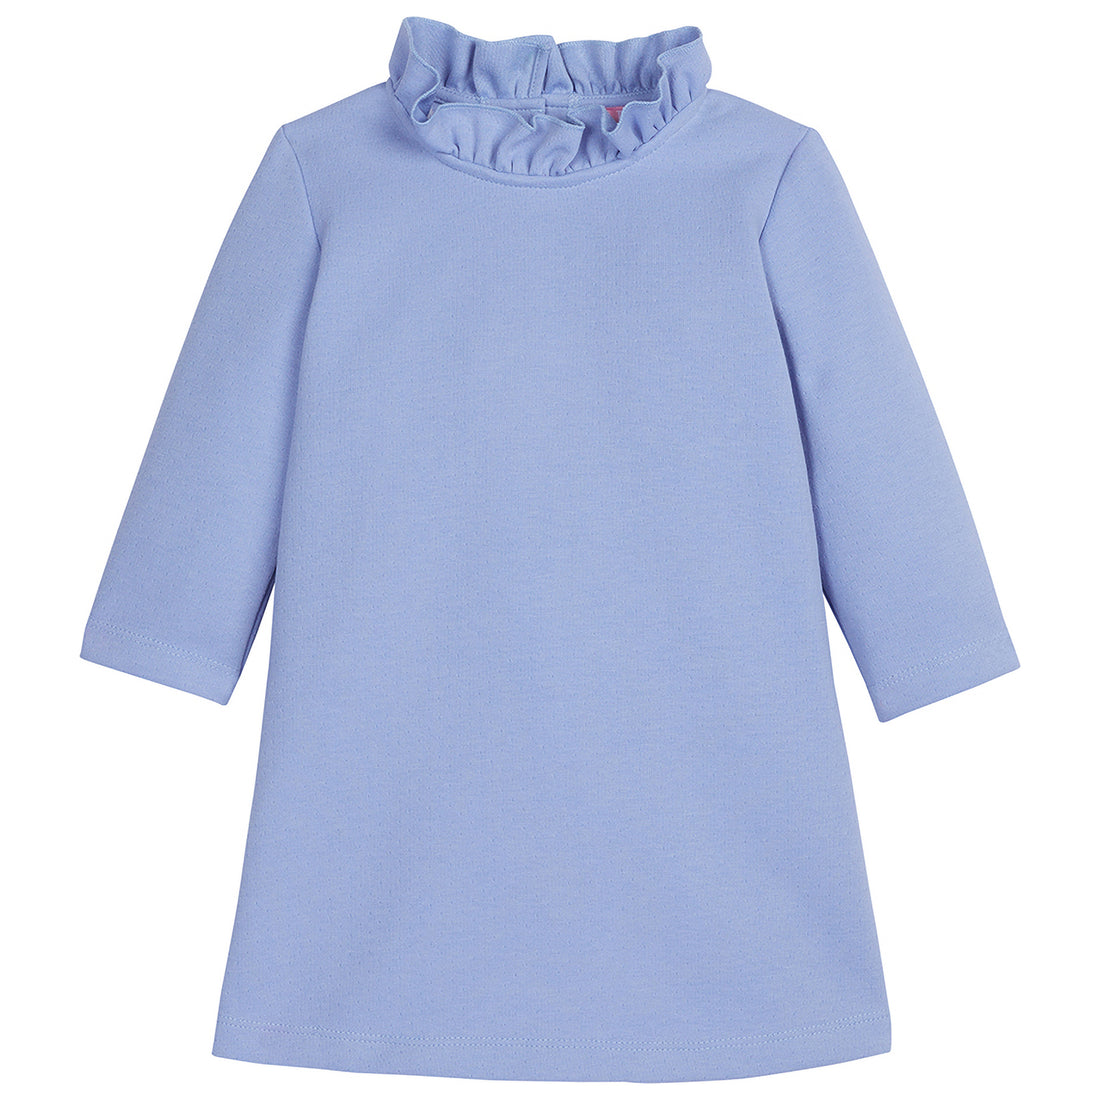 Light Blue Long Sleeve dress with ruffles around the neckline--ToryDress BISBY girls/teens